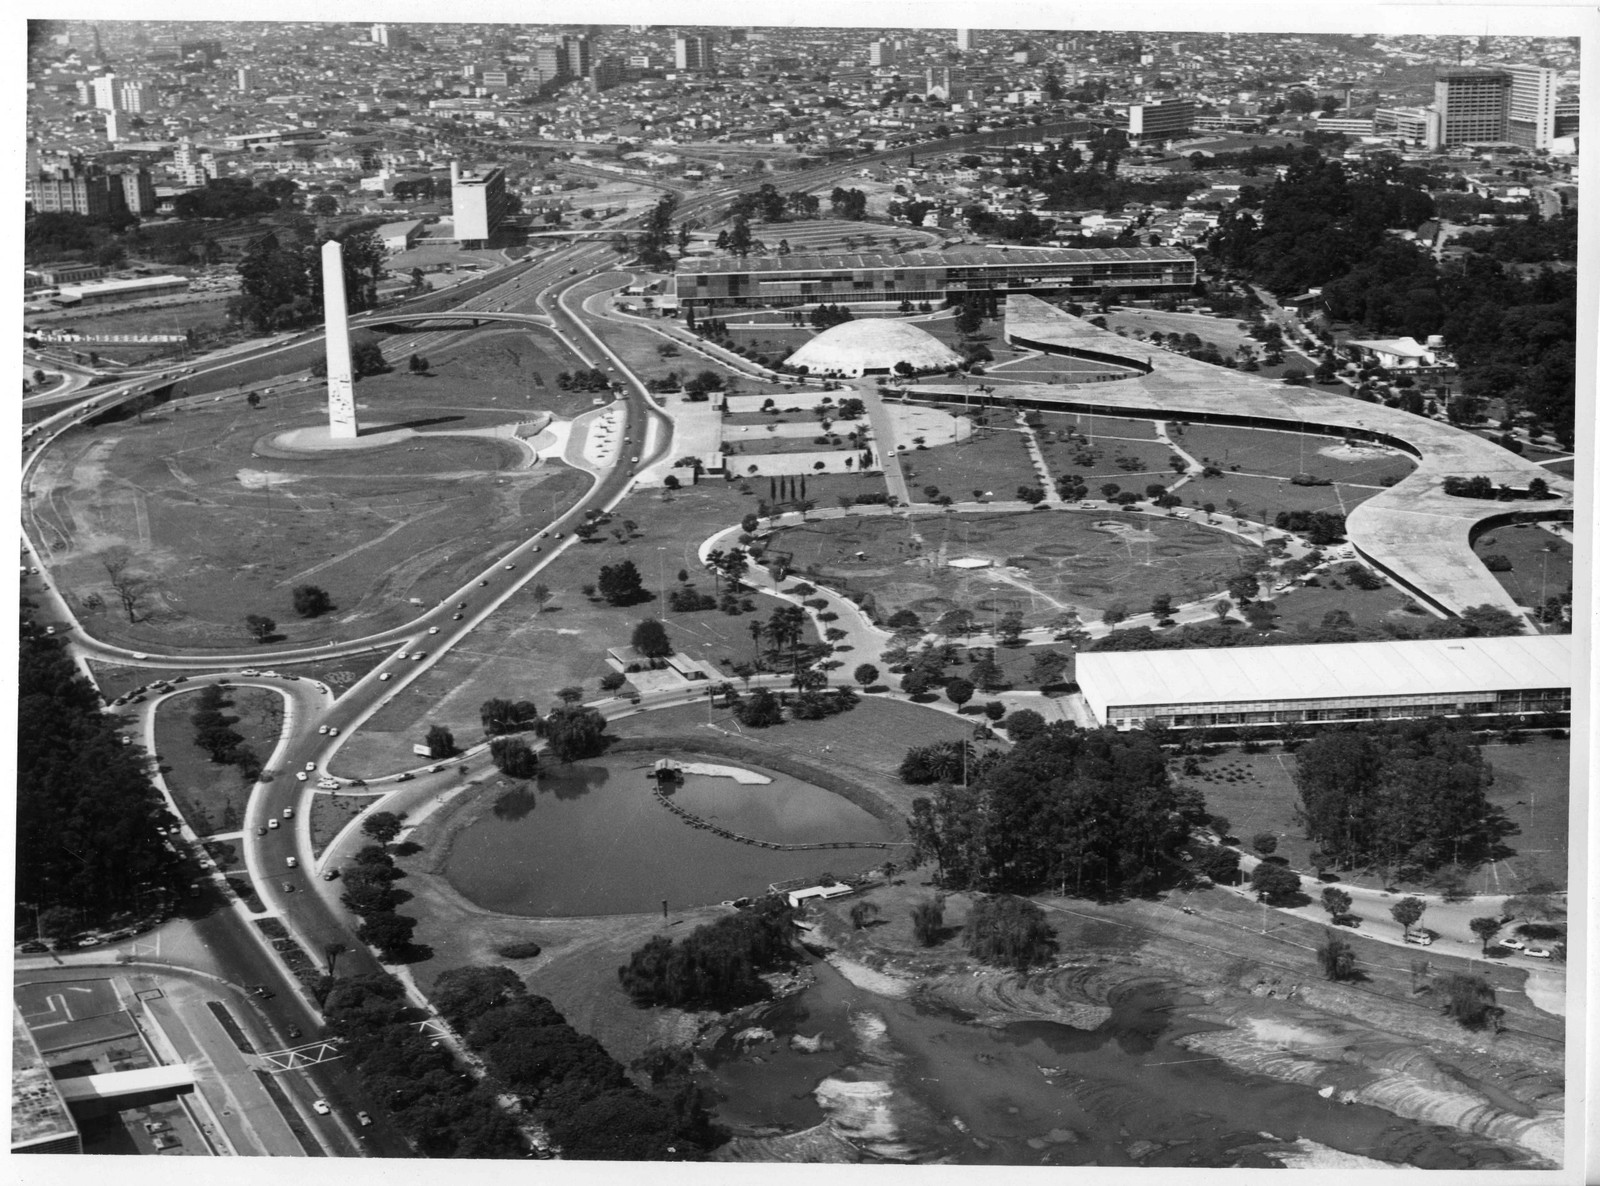 Vista aérea do Complexo do Ibirapuera no final da década de 1960 — Foto: Ivo Justino/ Acervo Fotográfico do Museu da Cidade de São Paulo